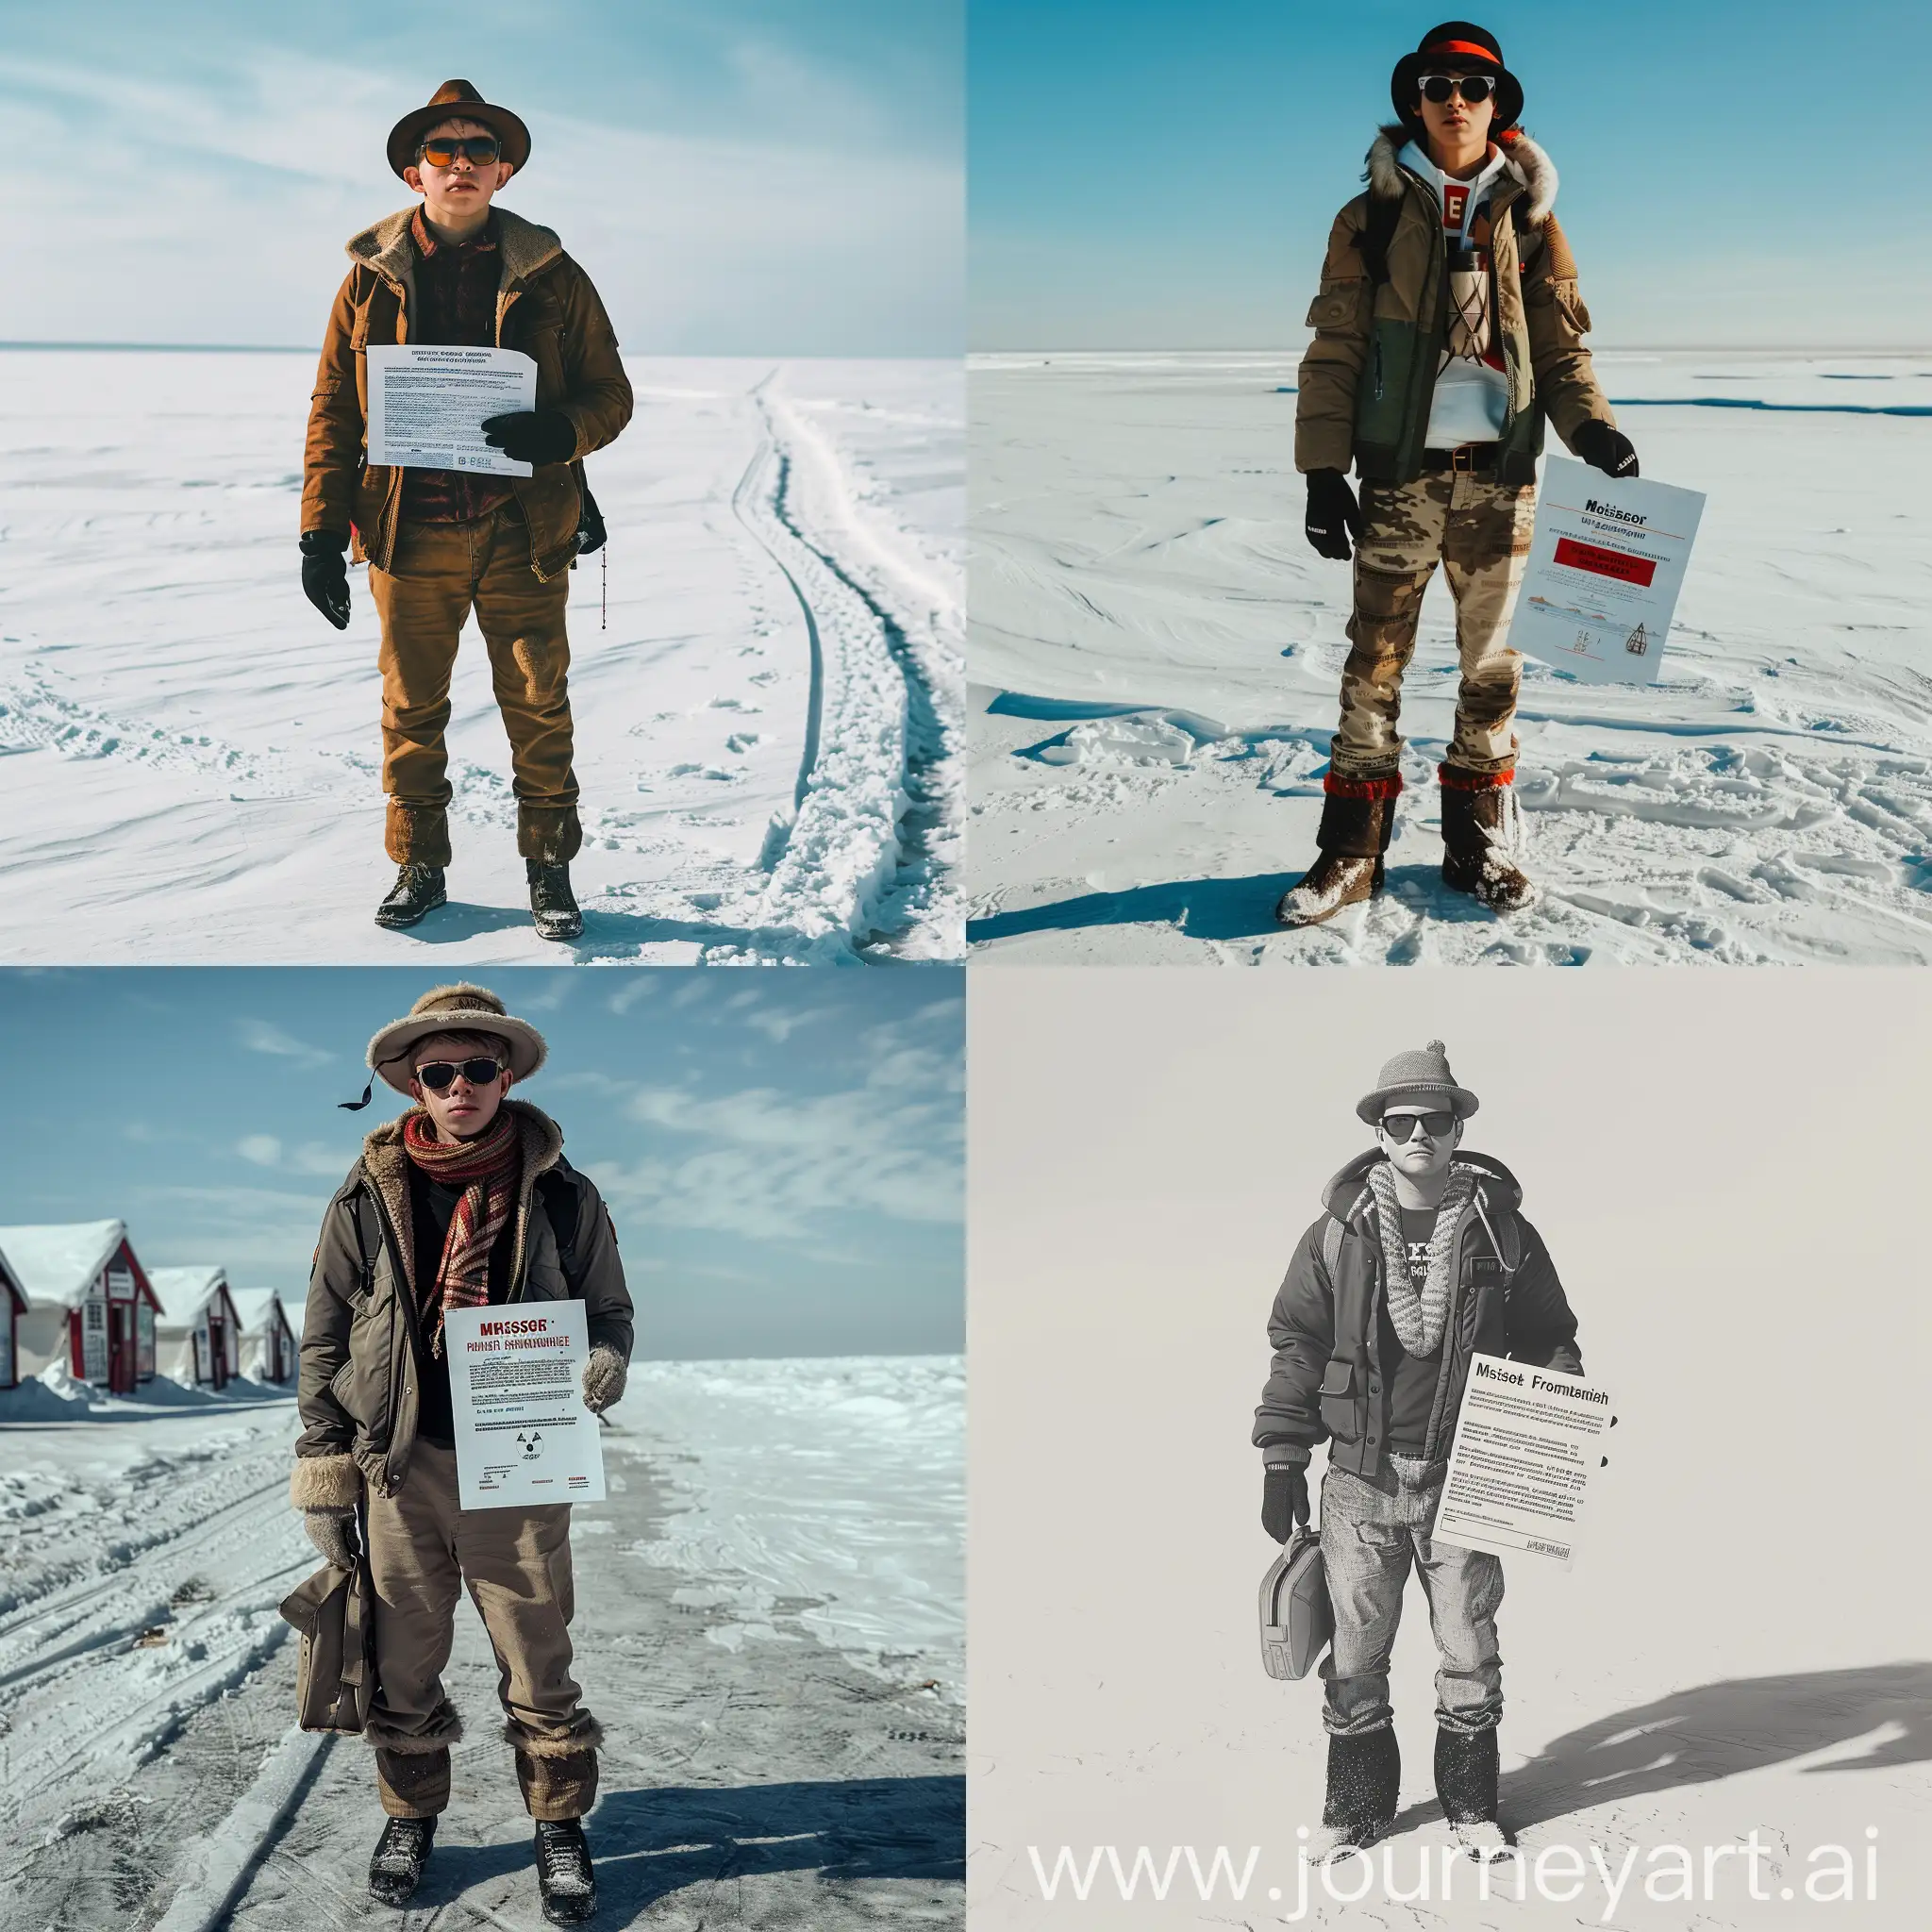 северный полюс стоит молодой человек в шапке, куртке, штанах и солнцезащитных очках. В руке лист с объявлением о пропаже человека.